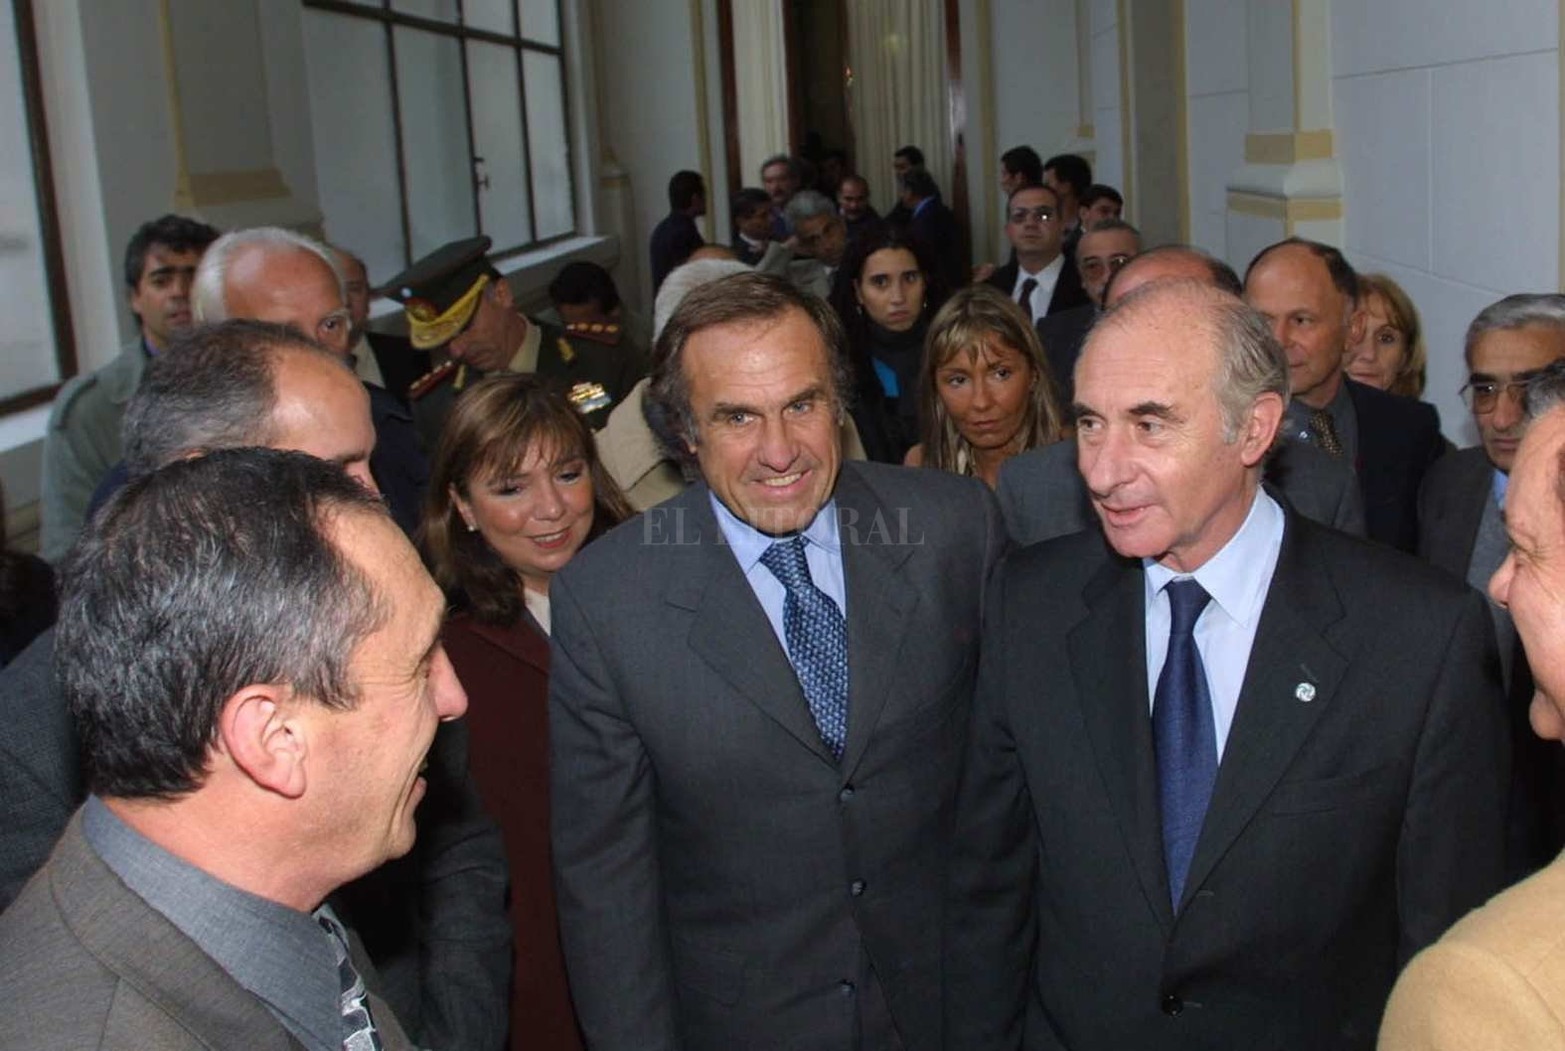 17 de mayo de 2001. Fernando de la Rúa, presidente de la Nación, junto a Carlos Reutemann, Jorge Obeid y Roxana Latorre.